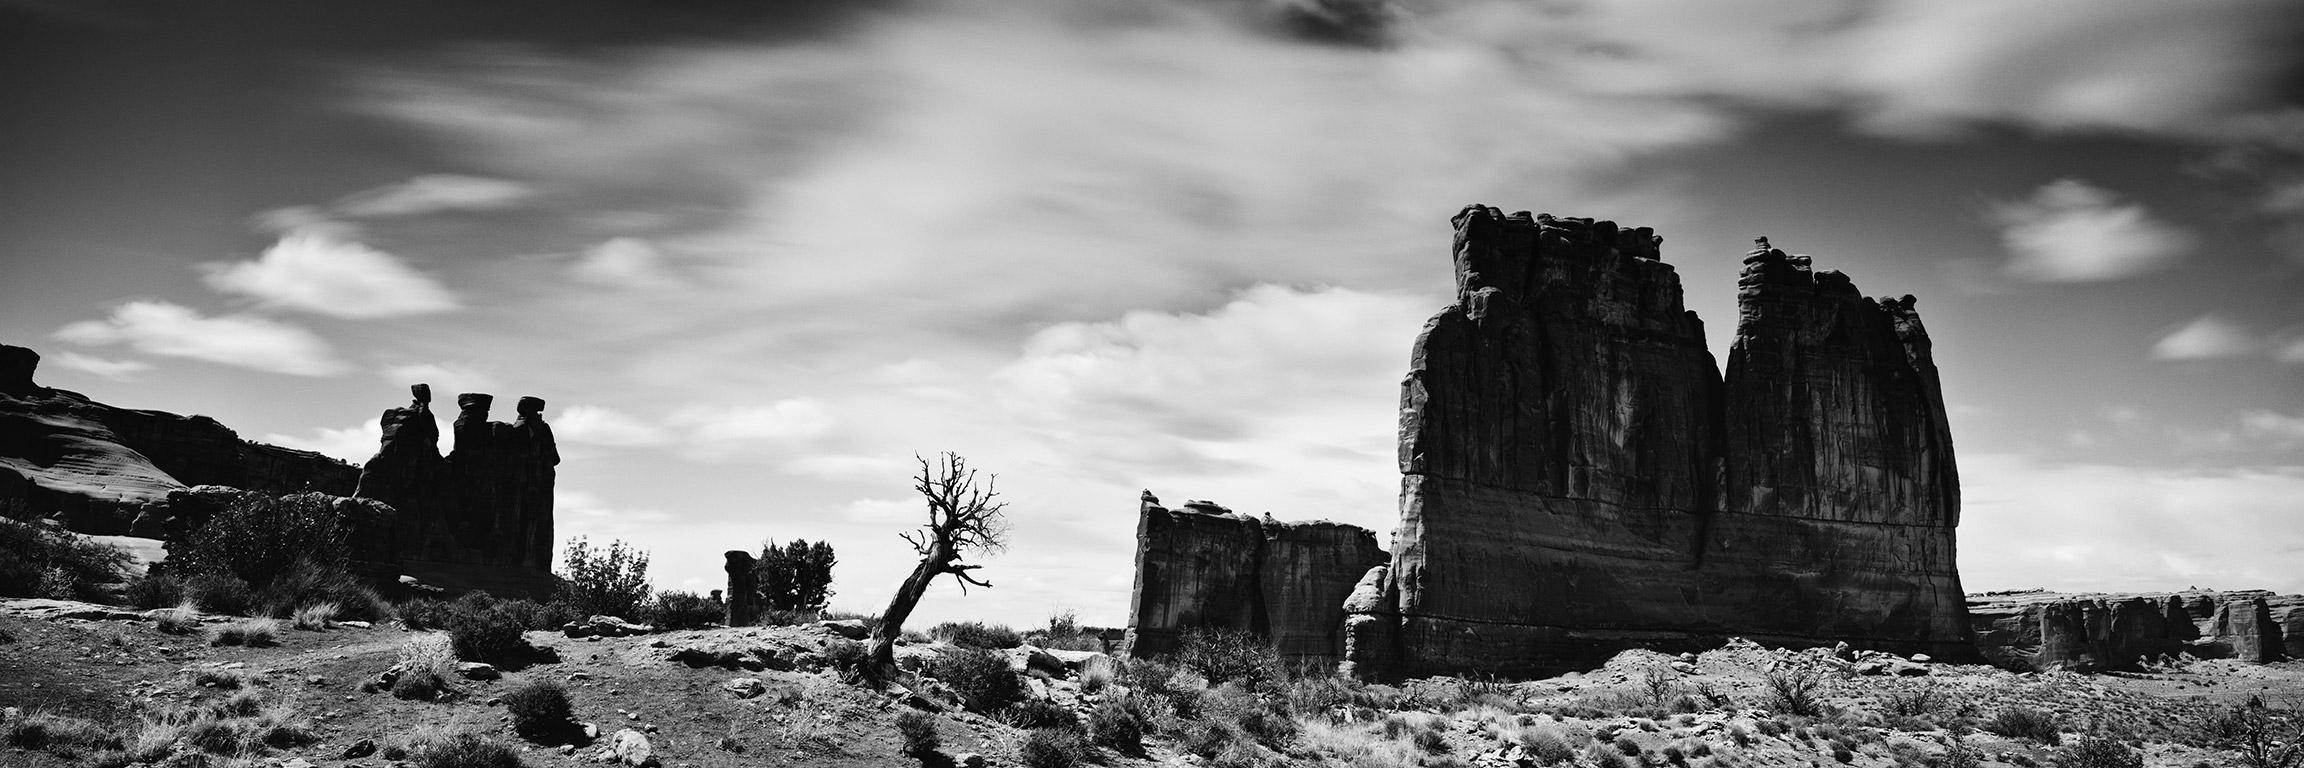 Black and White Photograph Gerald Berghammer - Panorama du Far West, Parc des Arches, Utah, USA, photographie de paysage en noir et blanc